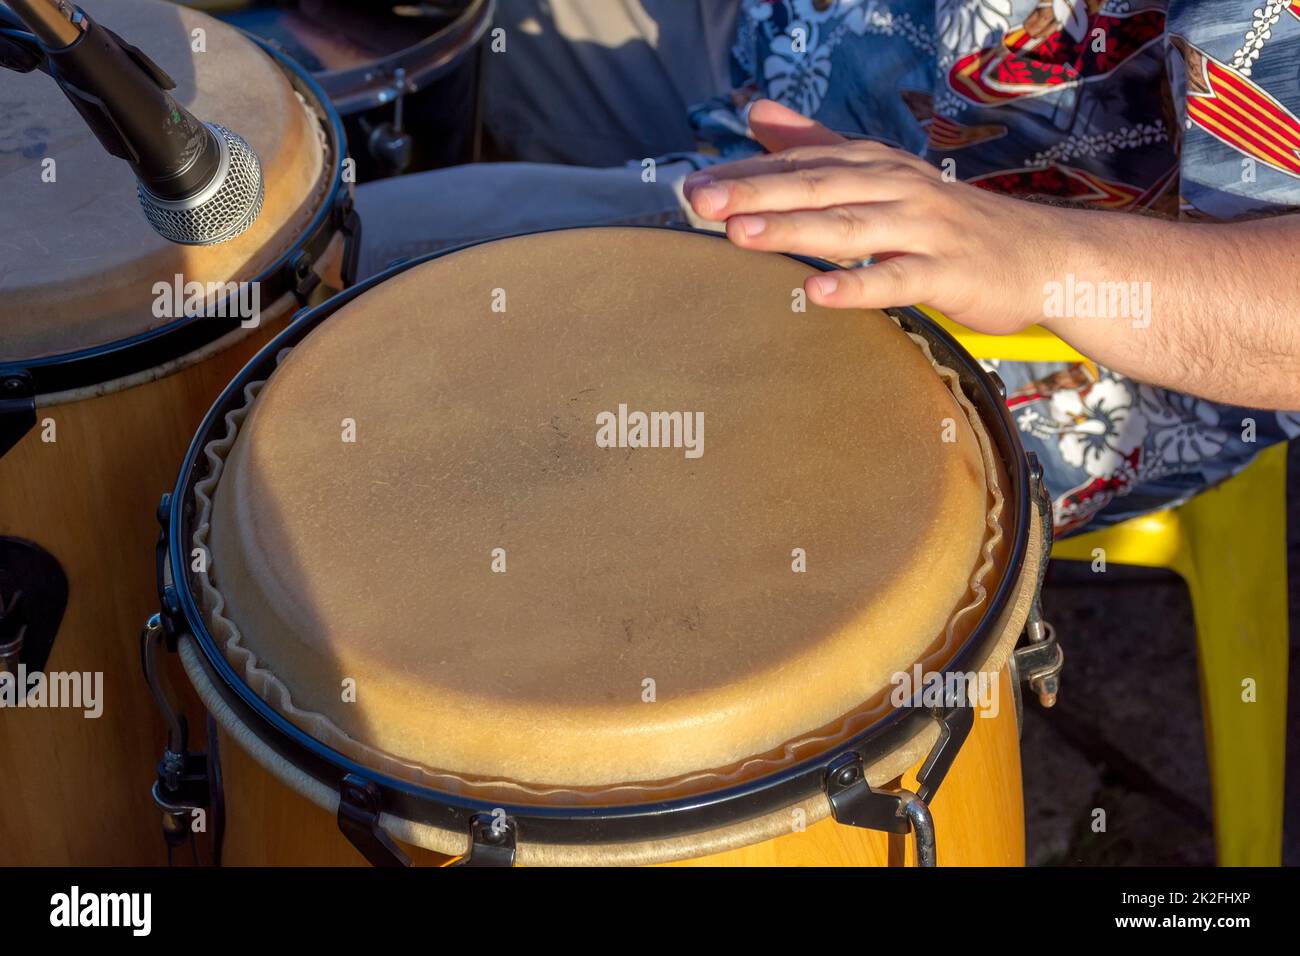 Tambours de samba brésiliens dans la fête de carnaval de rue Photo Stock -  Alamy